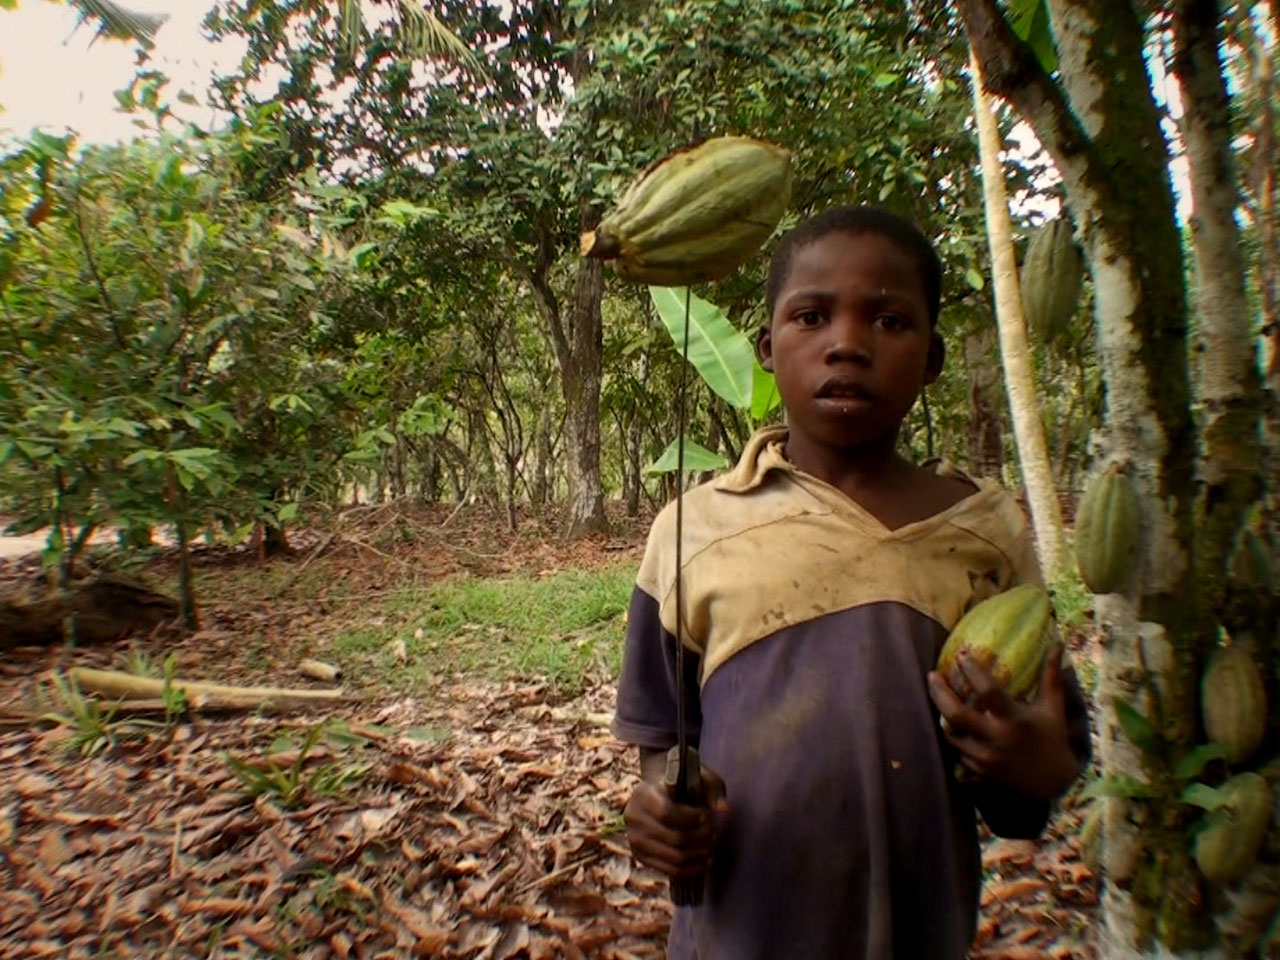 Tulane cocoa labor report: 21% rise in Africa